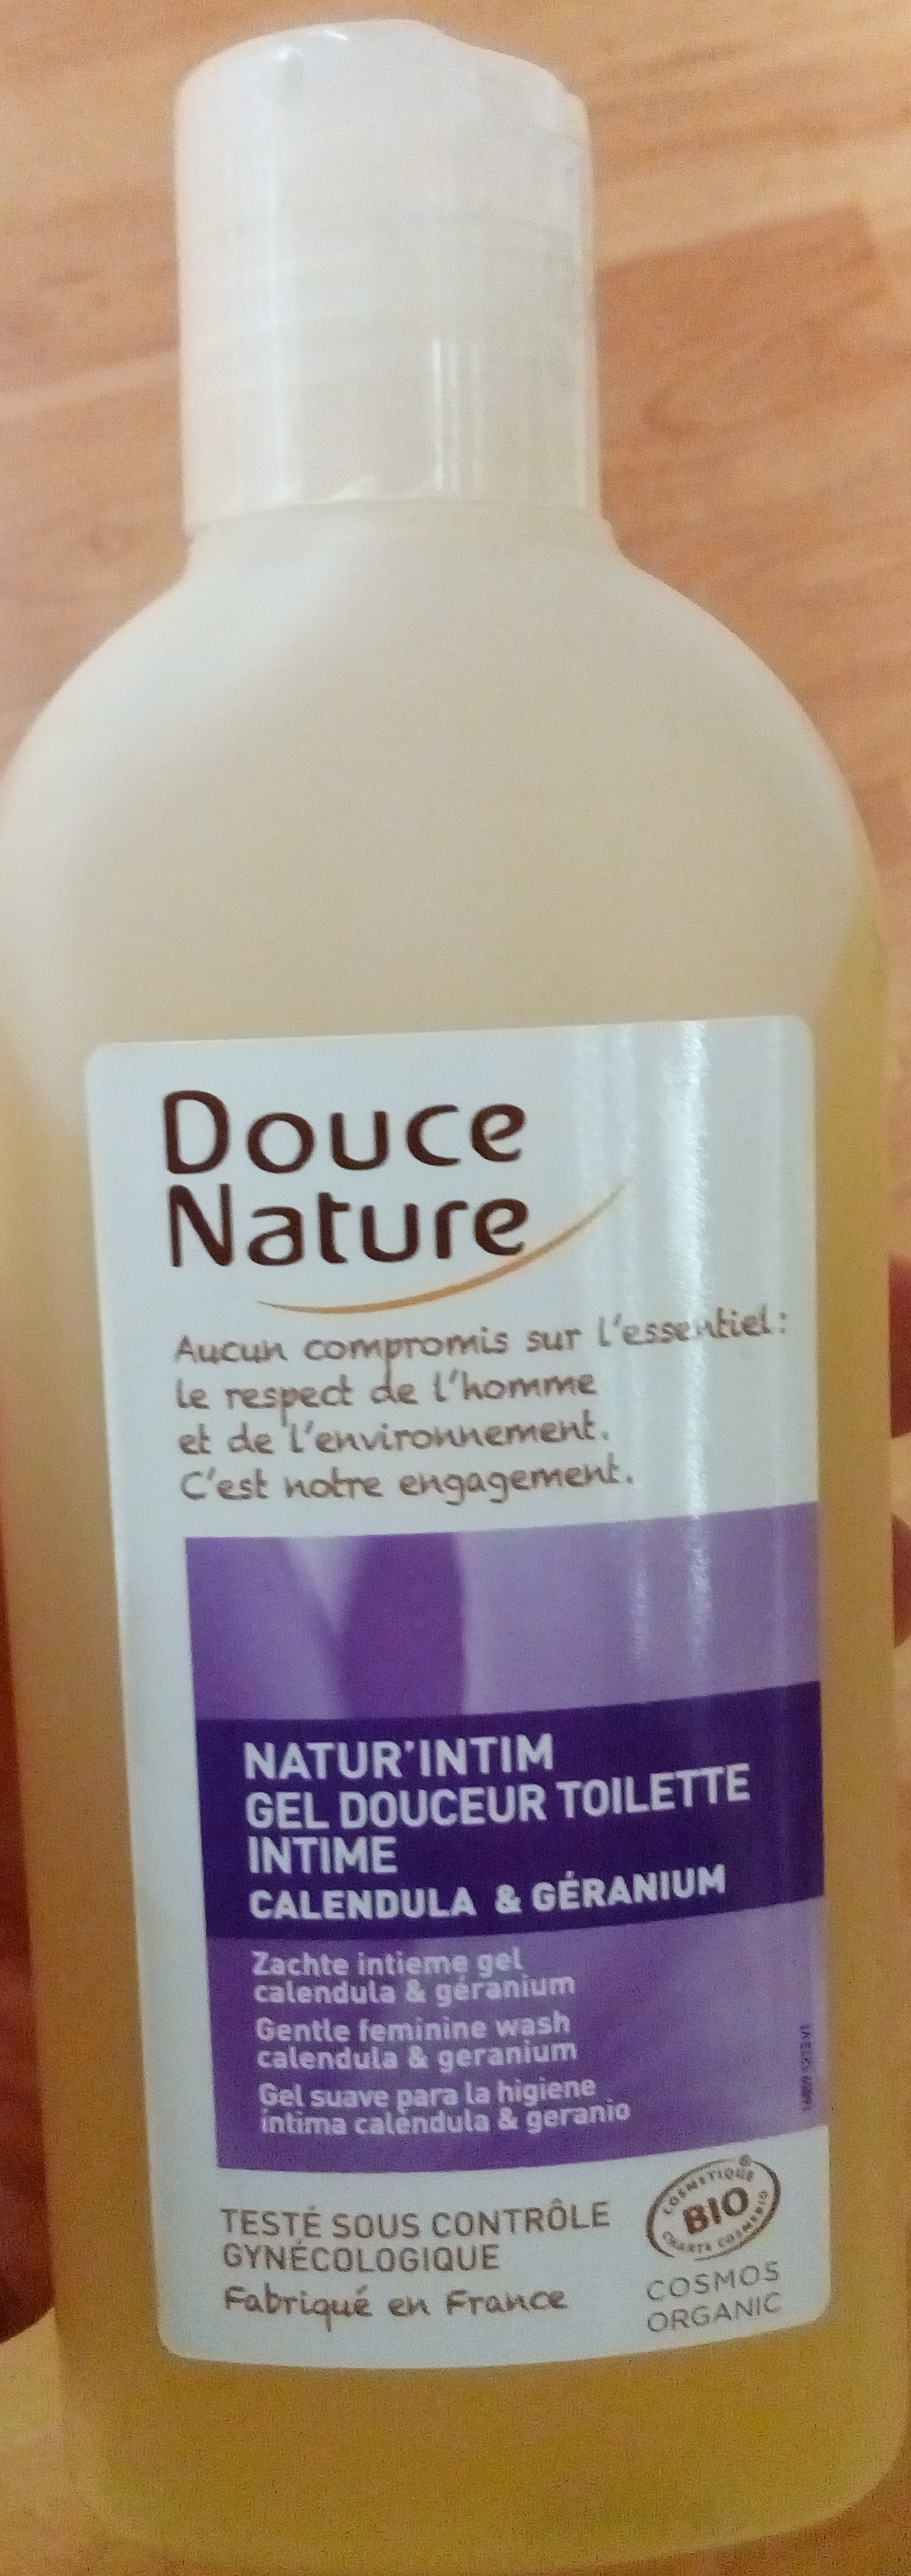 Natur'Intim Gel douceur Toilette Intime - Produit - fr